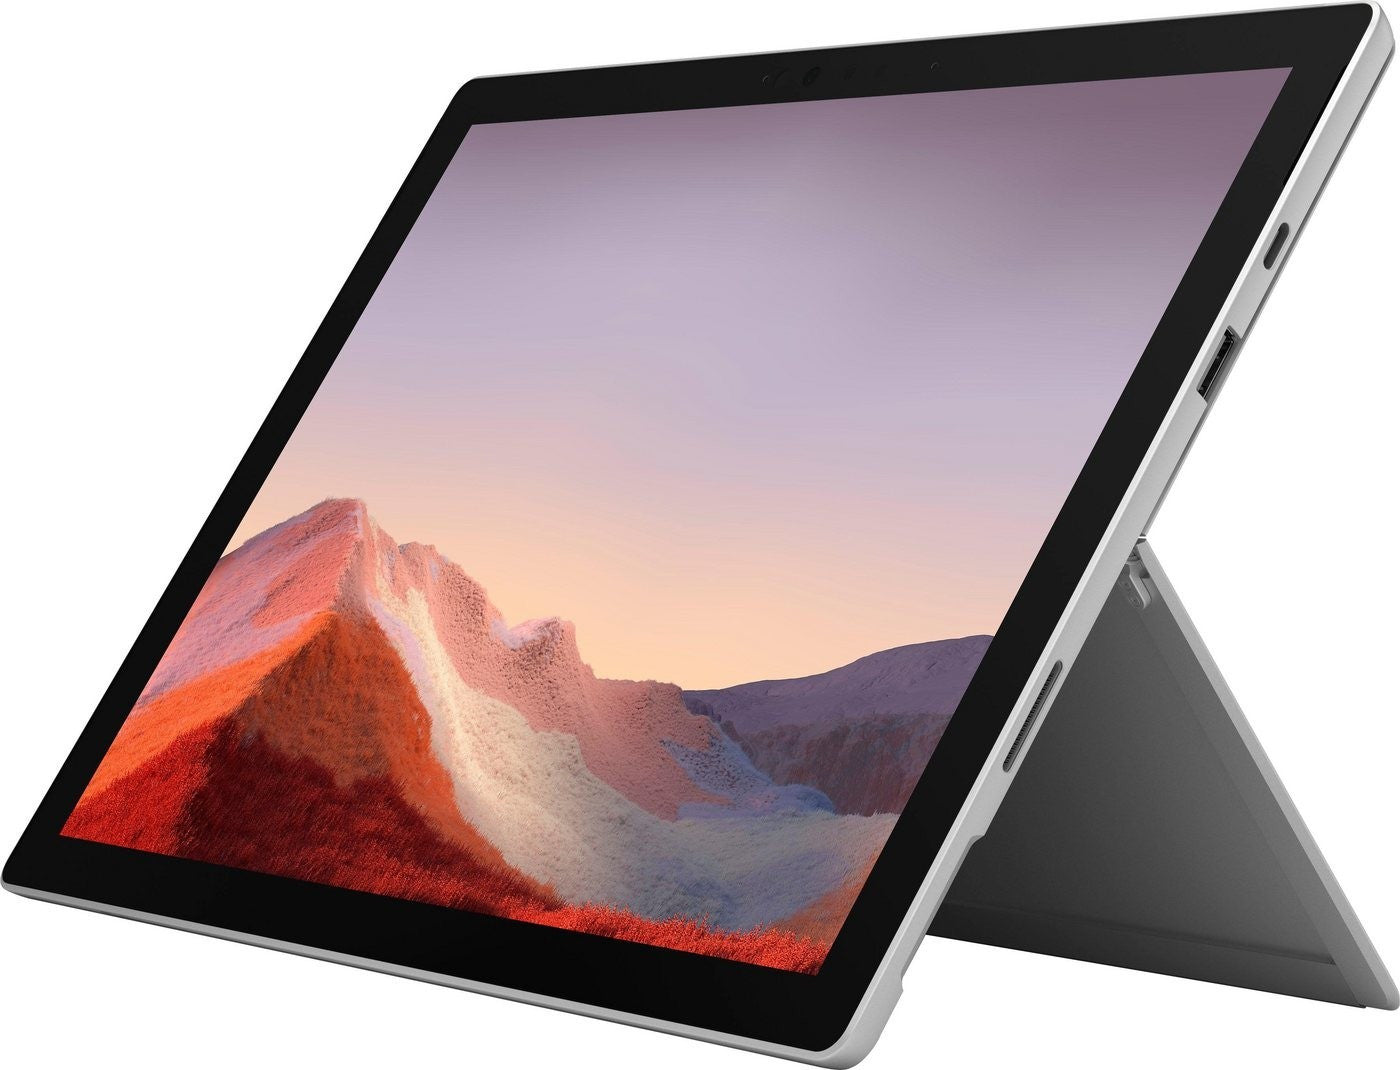 Microsoft Surface Pro 7 | 8GB | 256GB | inkl. engl. Tastatur  |GBR